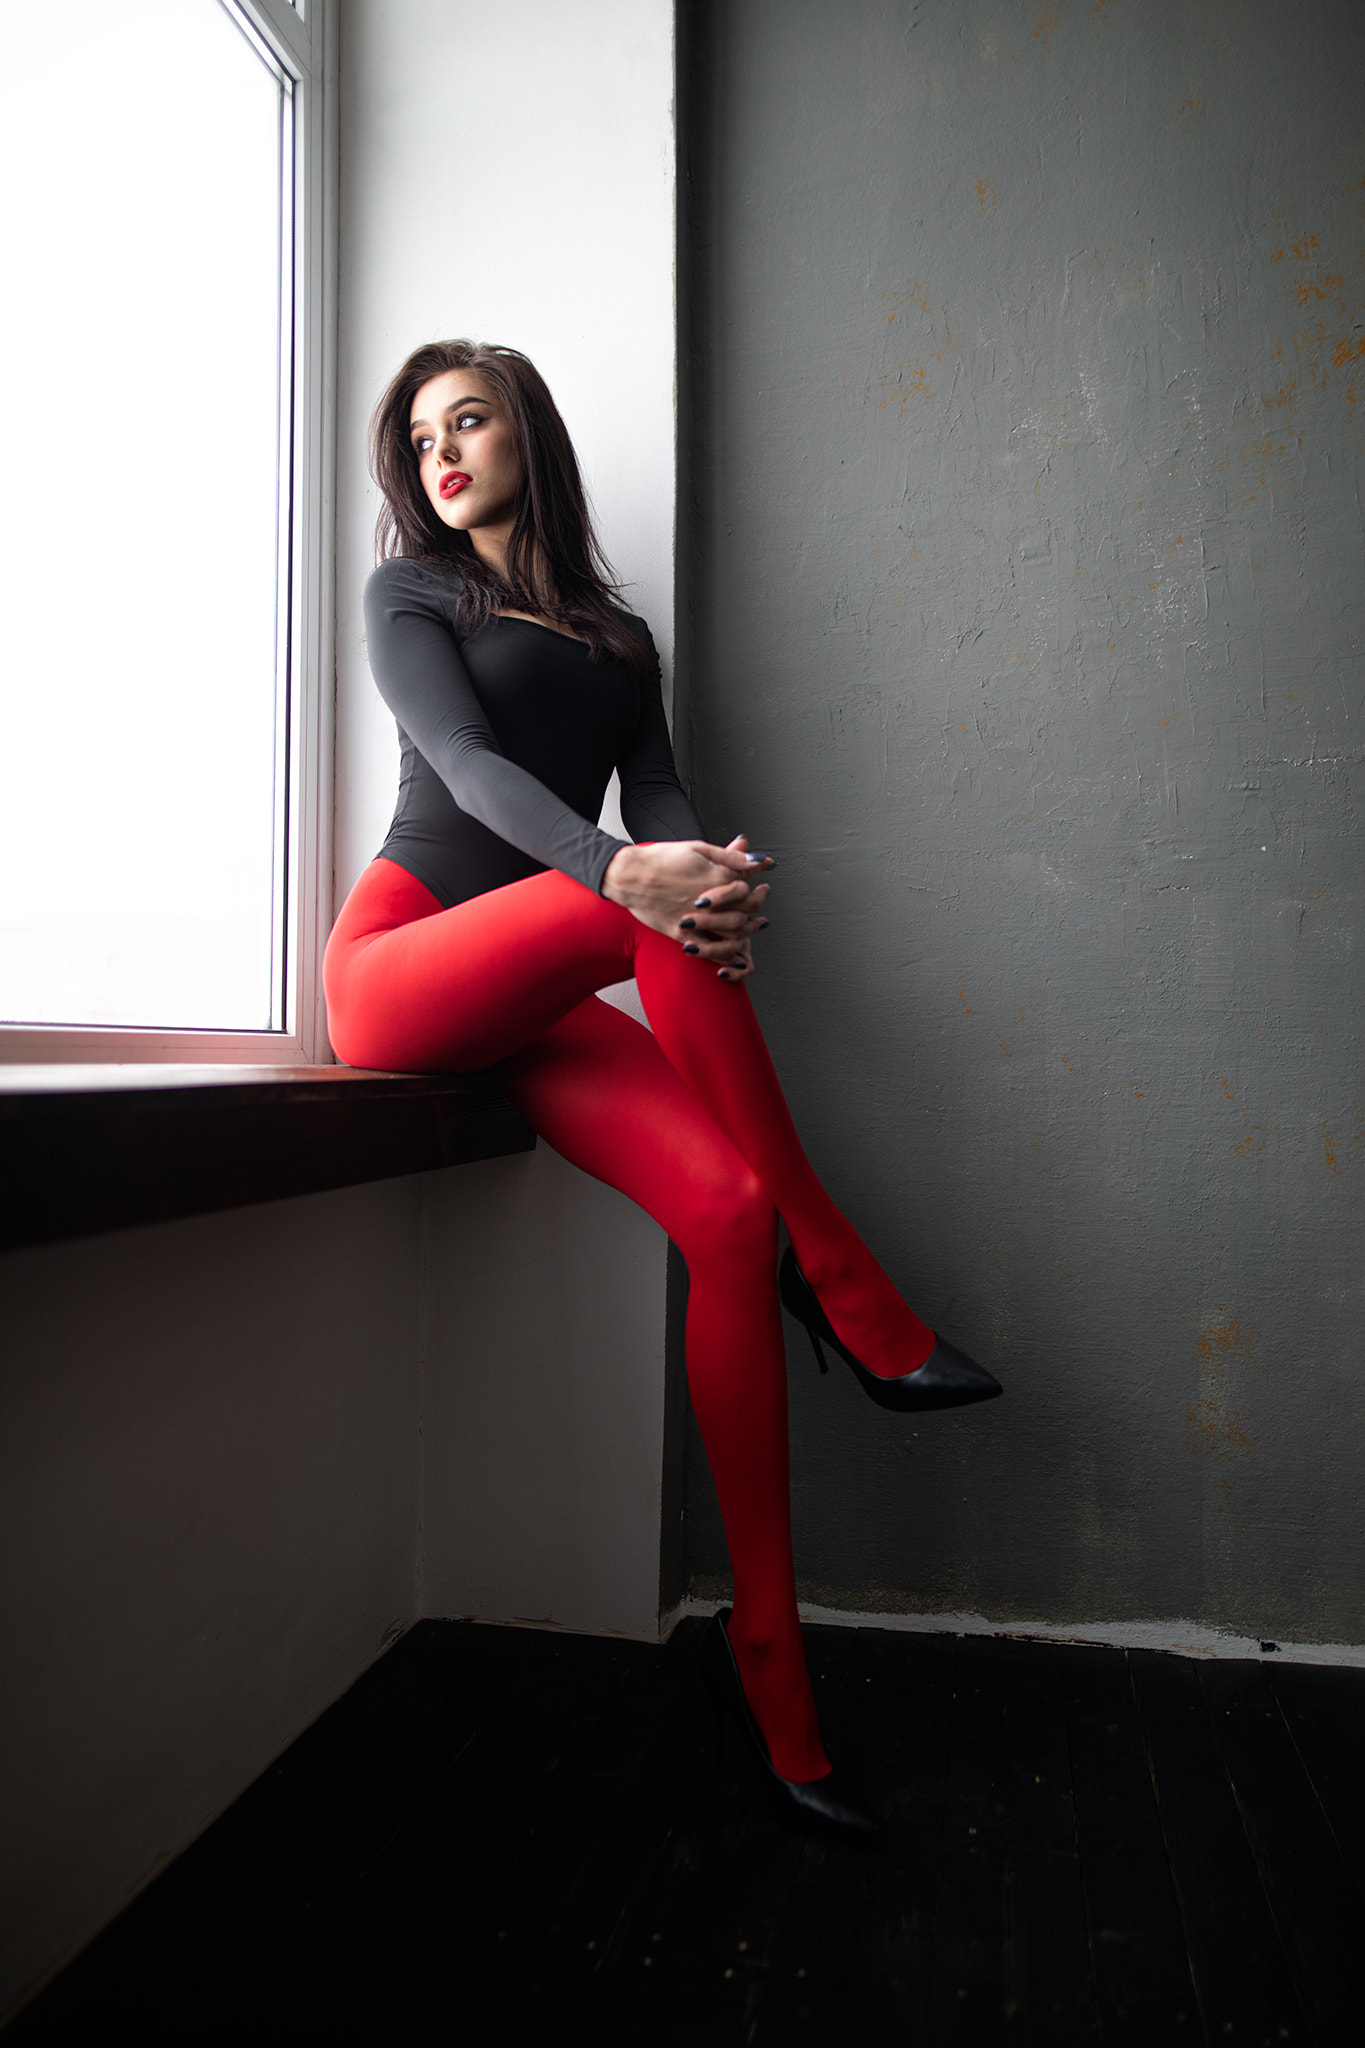 Dmitry Shulgin Women Brunette Red Legs Crossed Black Window Holding Knees Kristina Romanova Red Lips 1365x2048